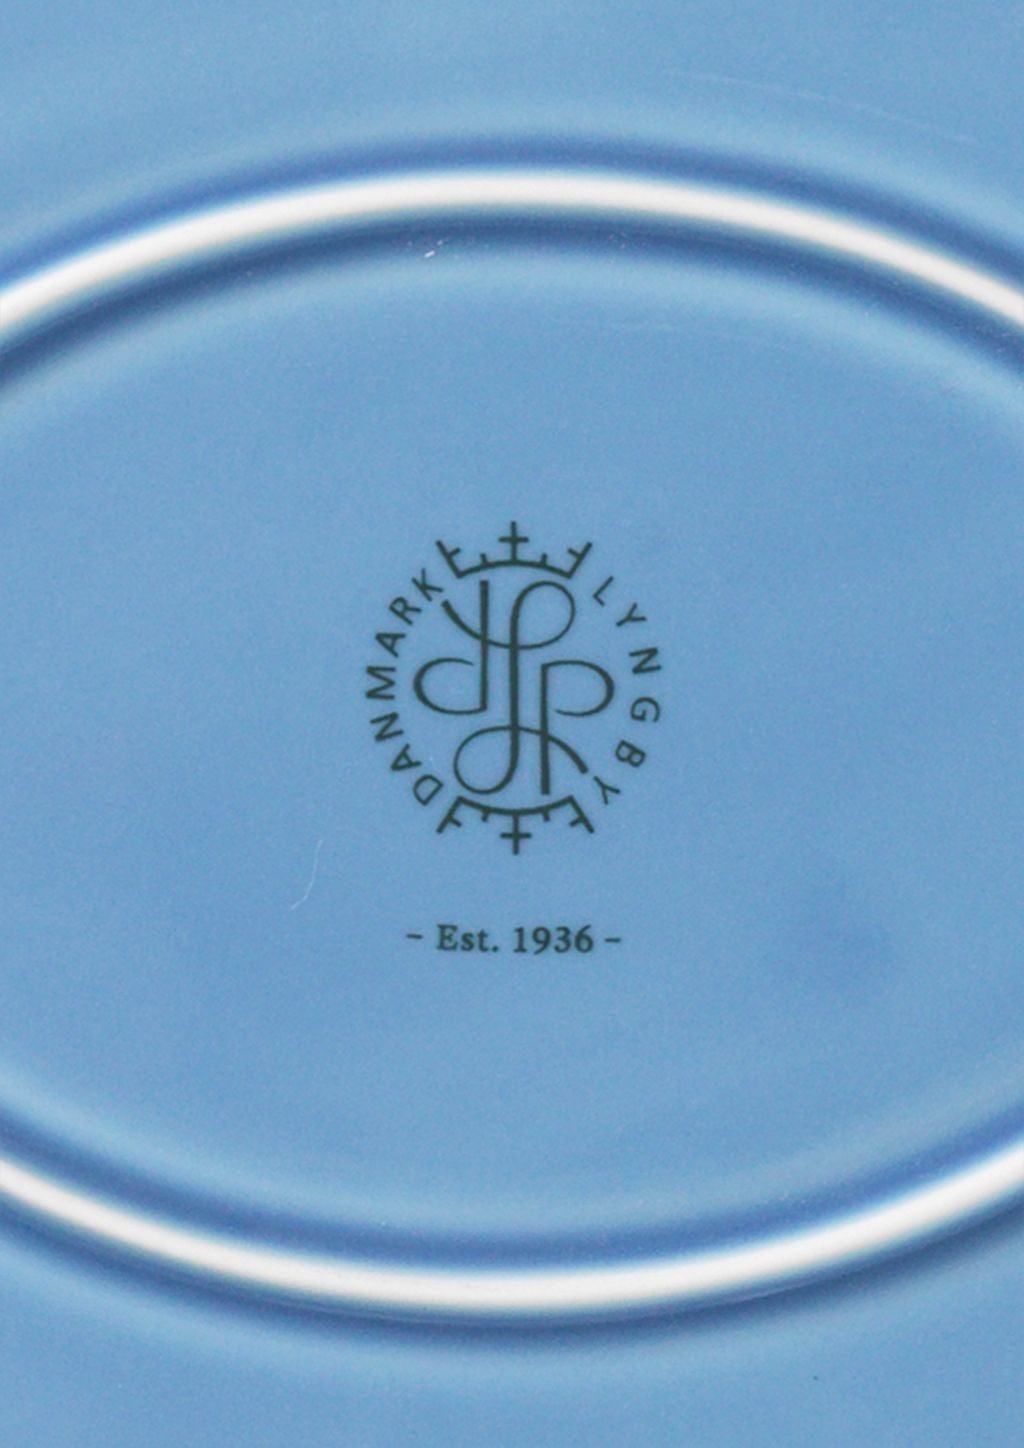 Lyngby Porcelæn Rhombe Couleur ovale Plaque de service 28,5x21,5, bleu